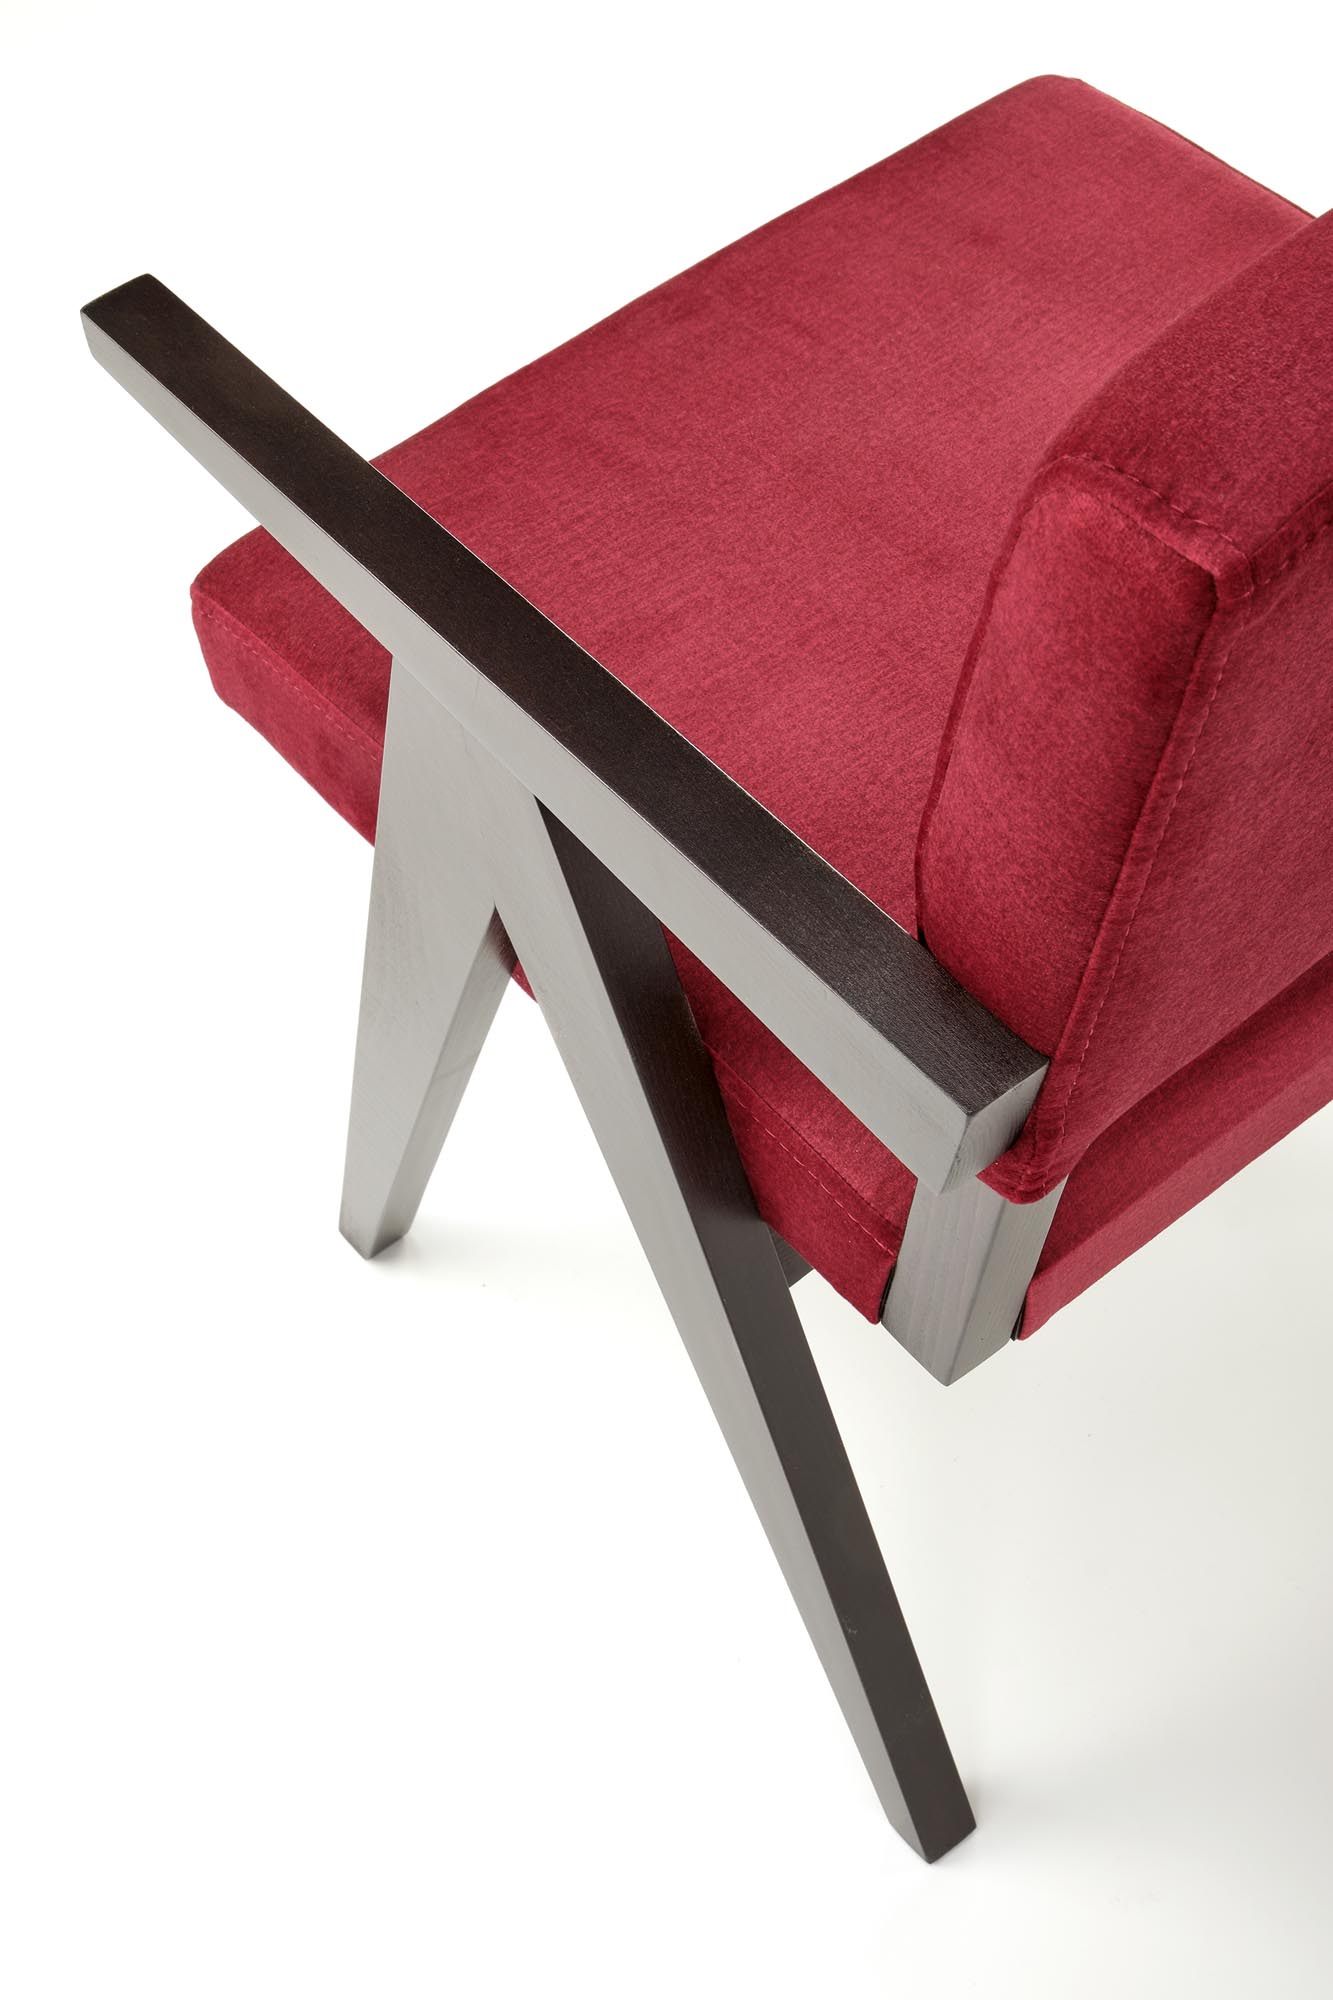 Krzesło tapicerowane z podłokietnikami Memory - heban / bordo krzesło tapicerowane z podłokietnikami memory - heban / bordo